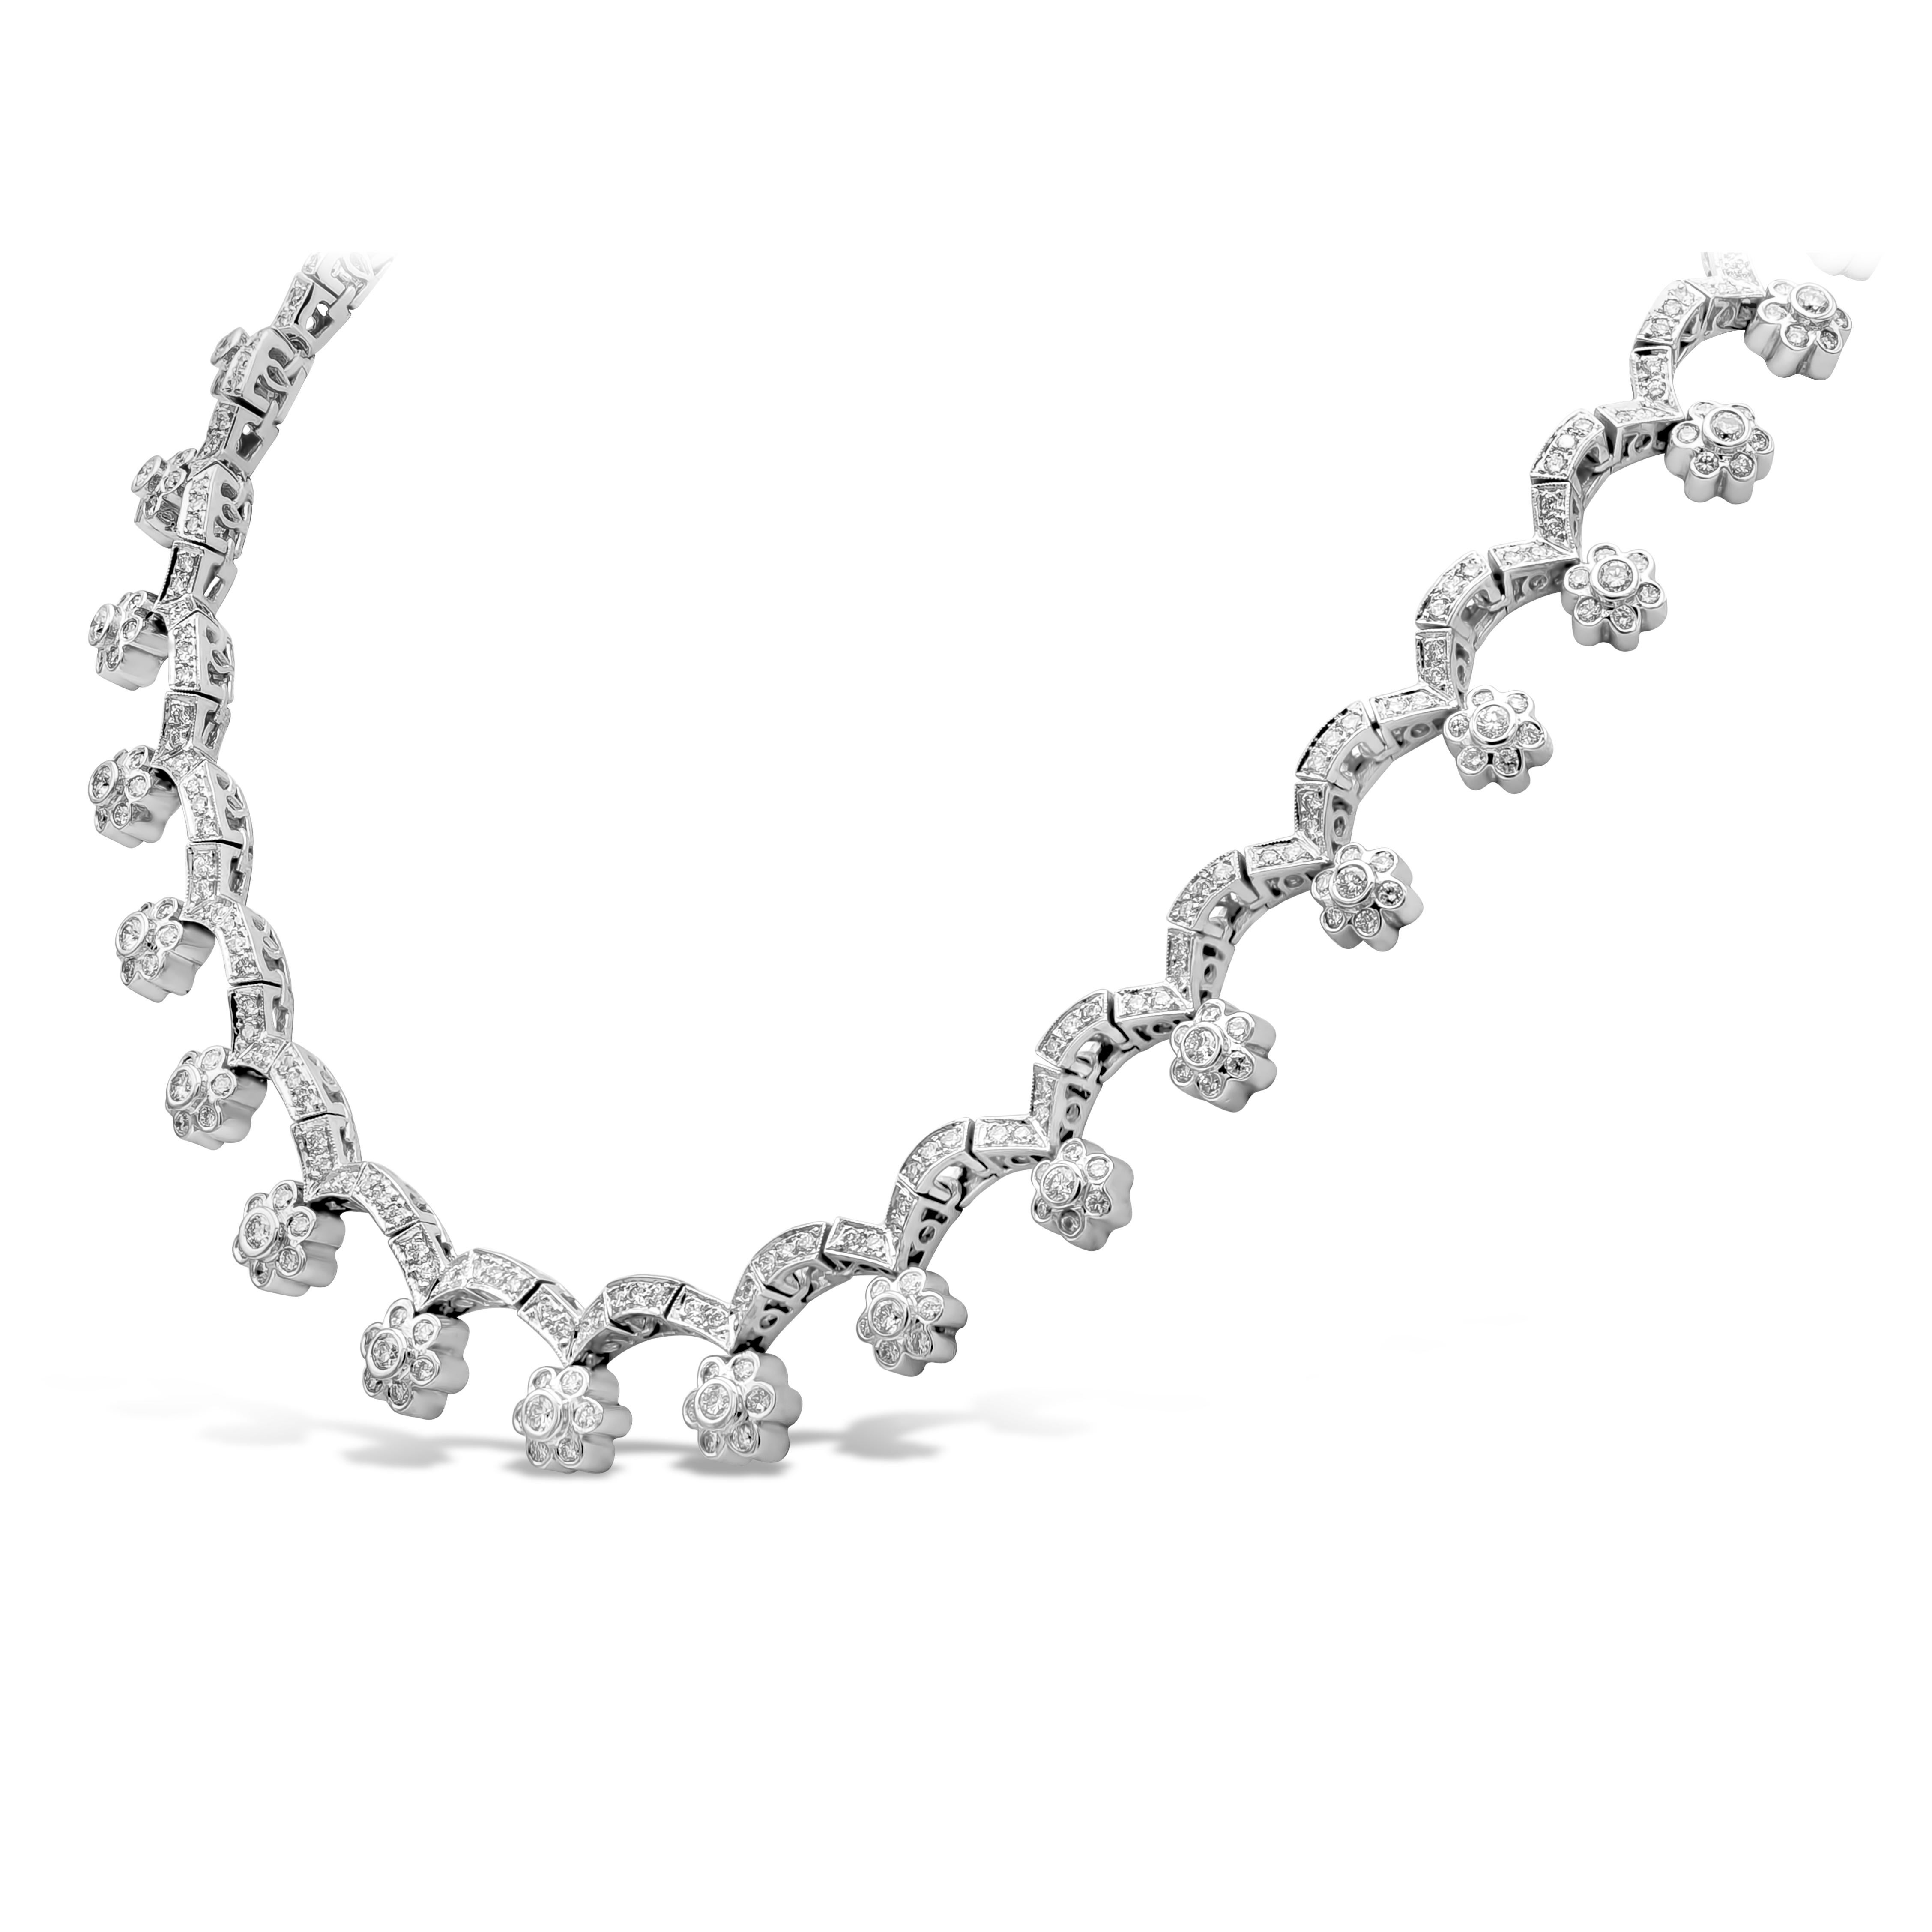 Un collier avec un motif de fleur, mettant en valeur 10,21 carats de diamants ronds de couleur G et de pureté SI. Le motif de fleur serti en chaton est suspendu dans un design arqué avec des diamants en maille. Fabriqué en or blanc 18 carats.